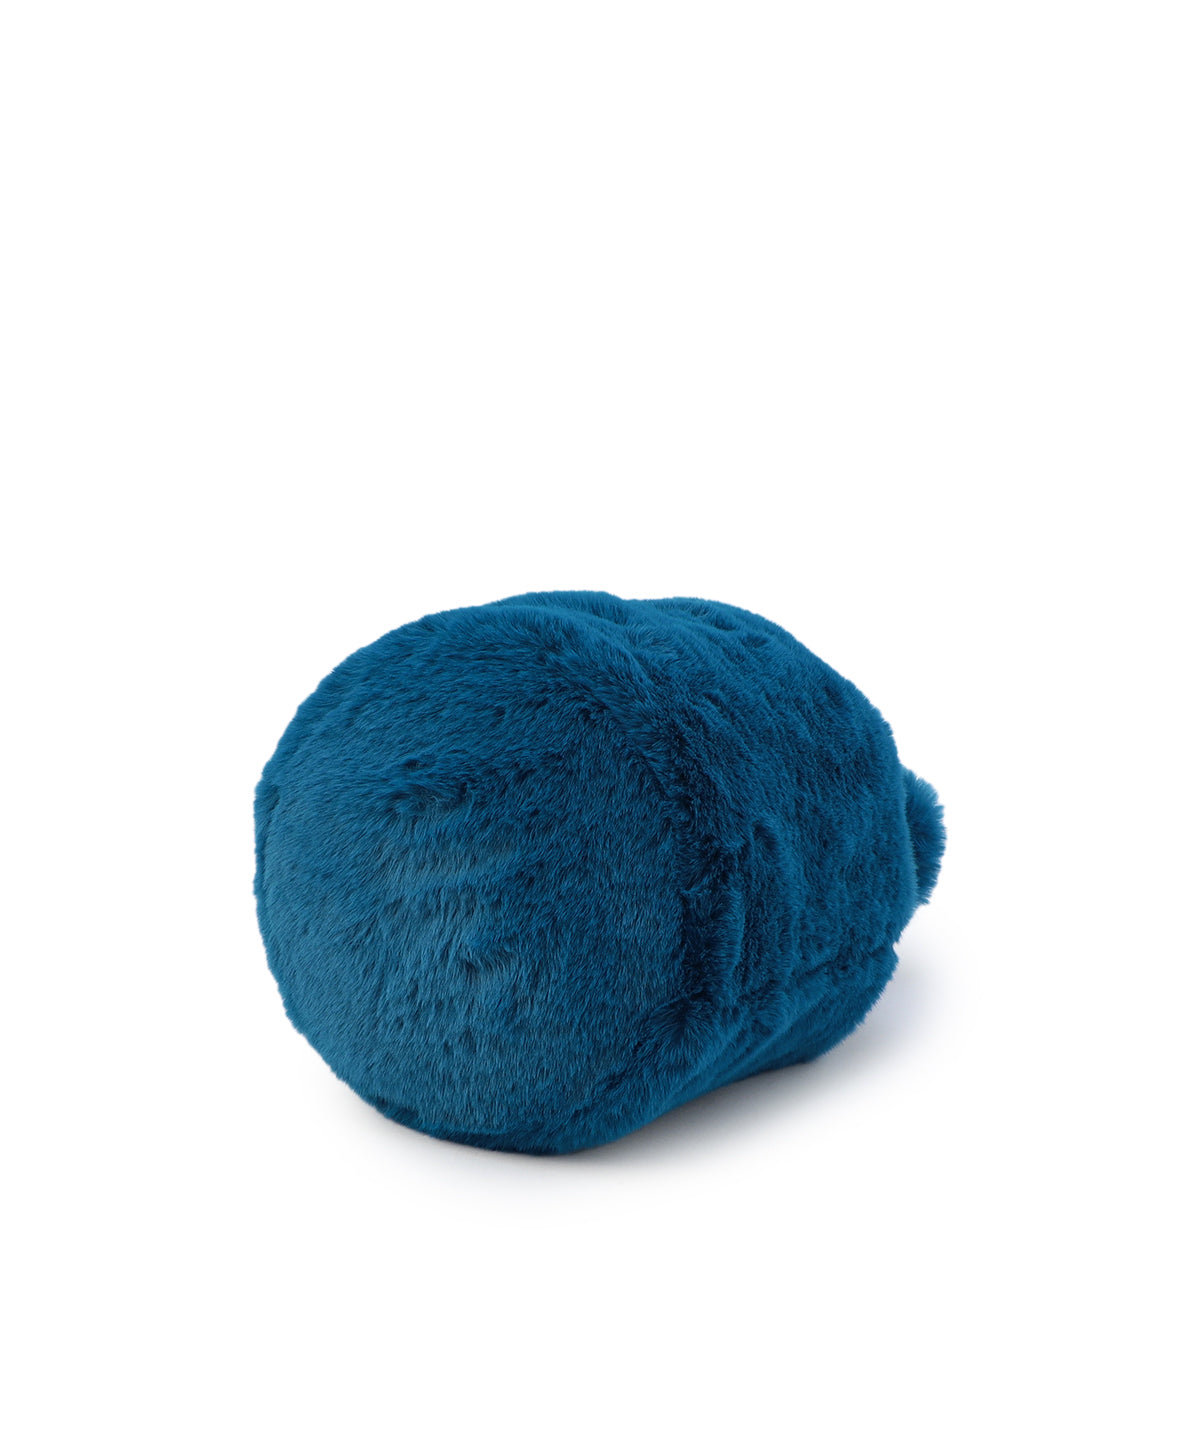 Eco Fur Drawstring Bag(Medium)E.BLUE